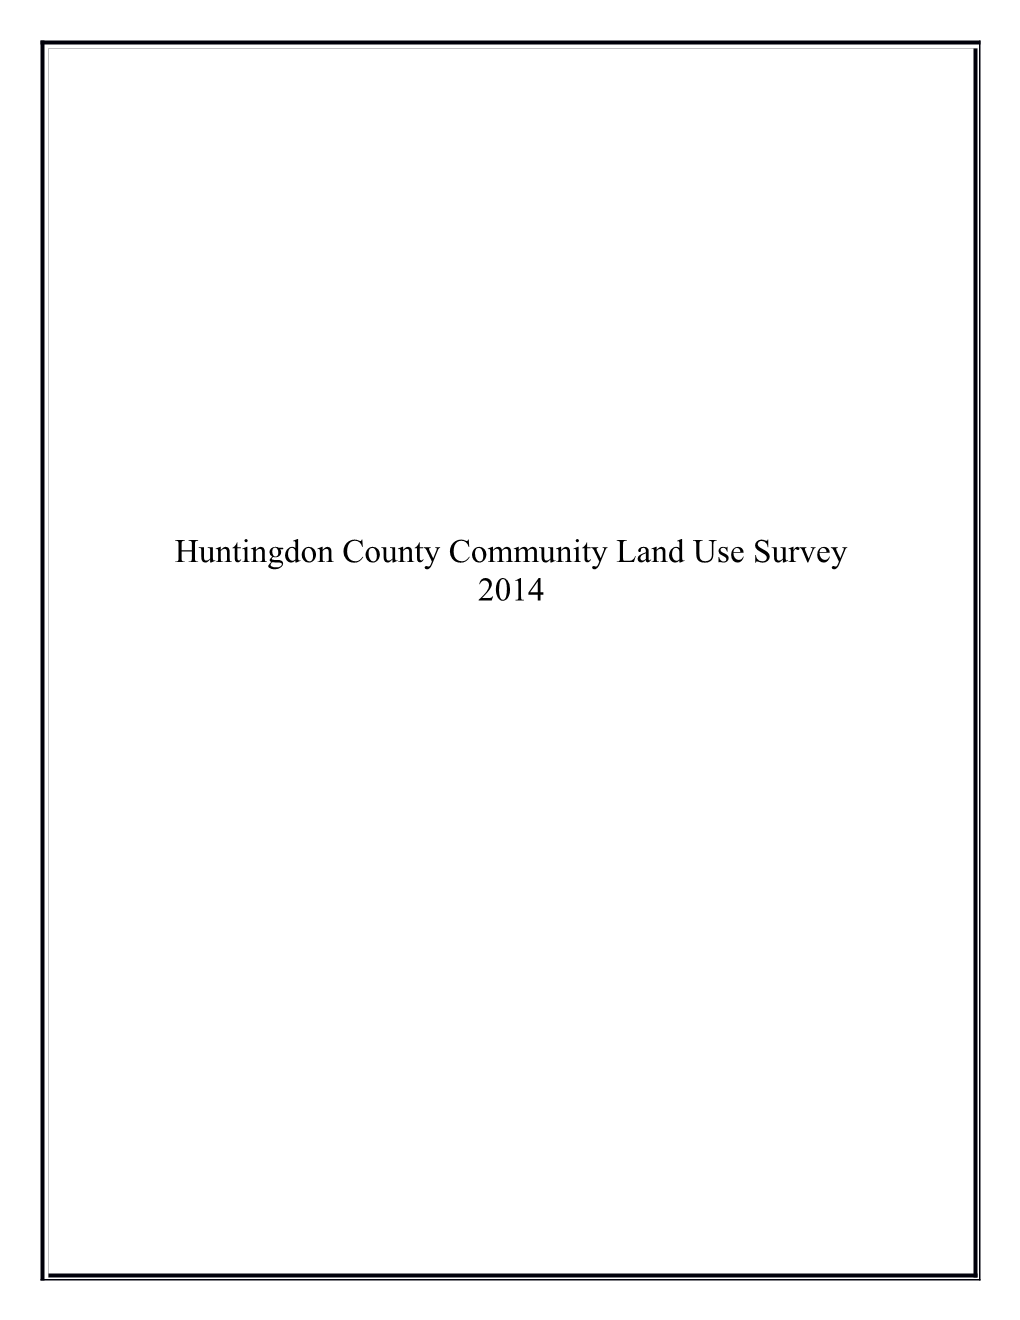 Community Land Use Survey